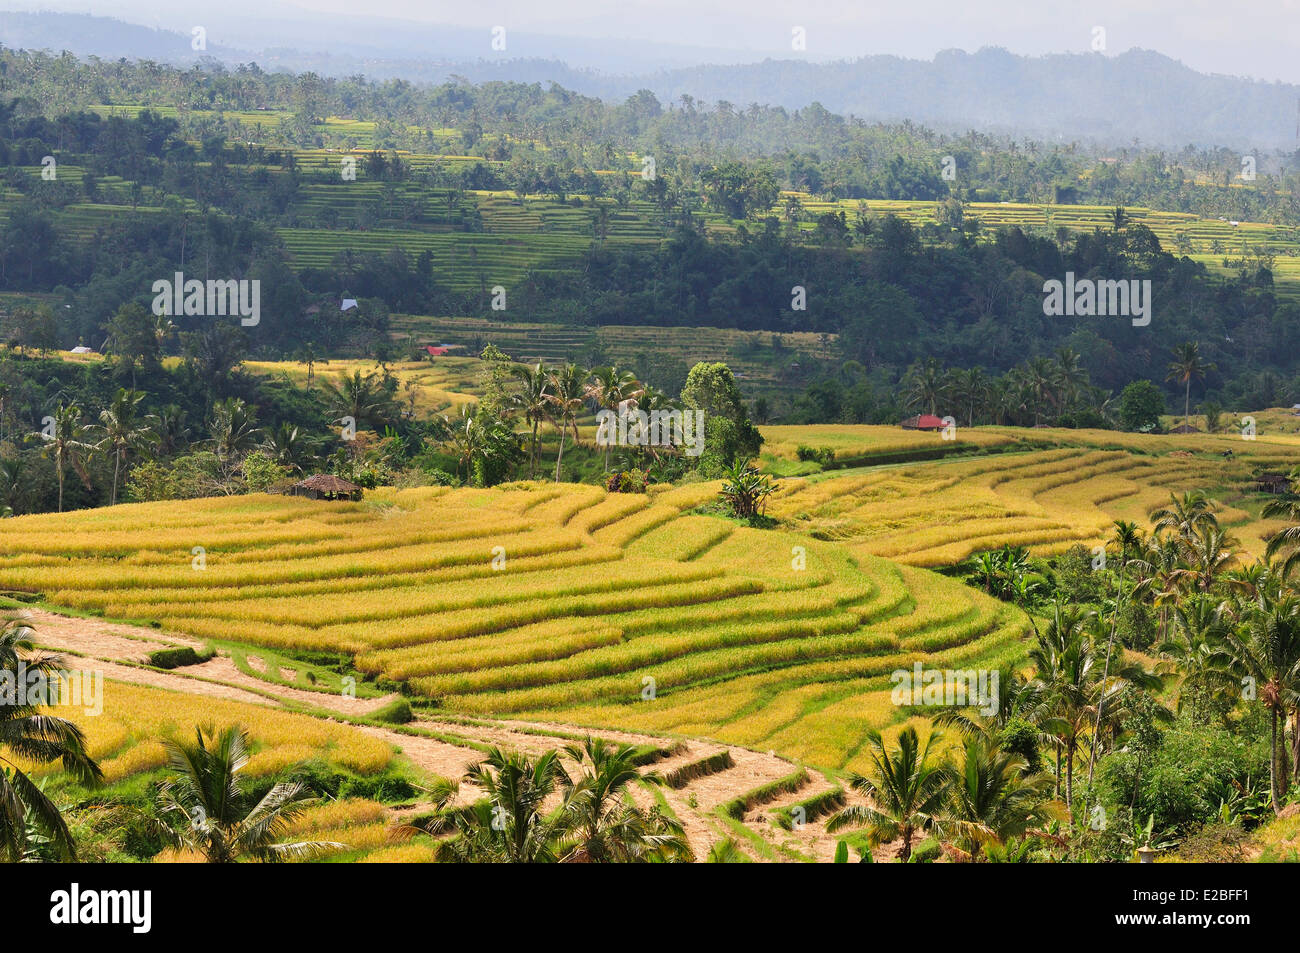 Indonesia, Bali, i campi di riso di Jatiluwih, il sistema subak, classificato come patrimonio mondiale dall' UNESCO, cooperativa la gestione dell'acqua fin dal IX secolo che riflette il concetto filosofico di Tri Hita Karana per essere in armonia con i regni della mente, il mondo umano e la natura Foto Stock